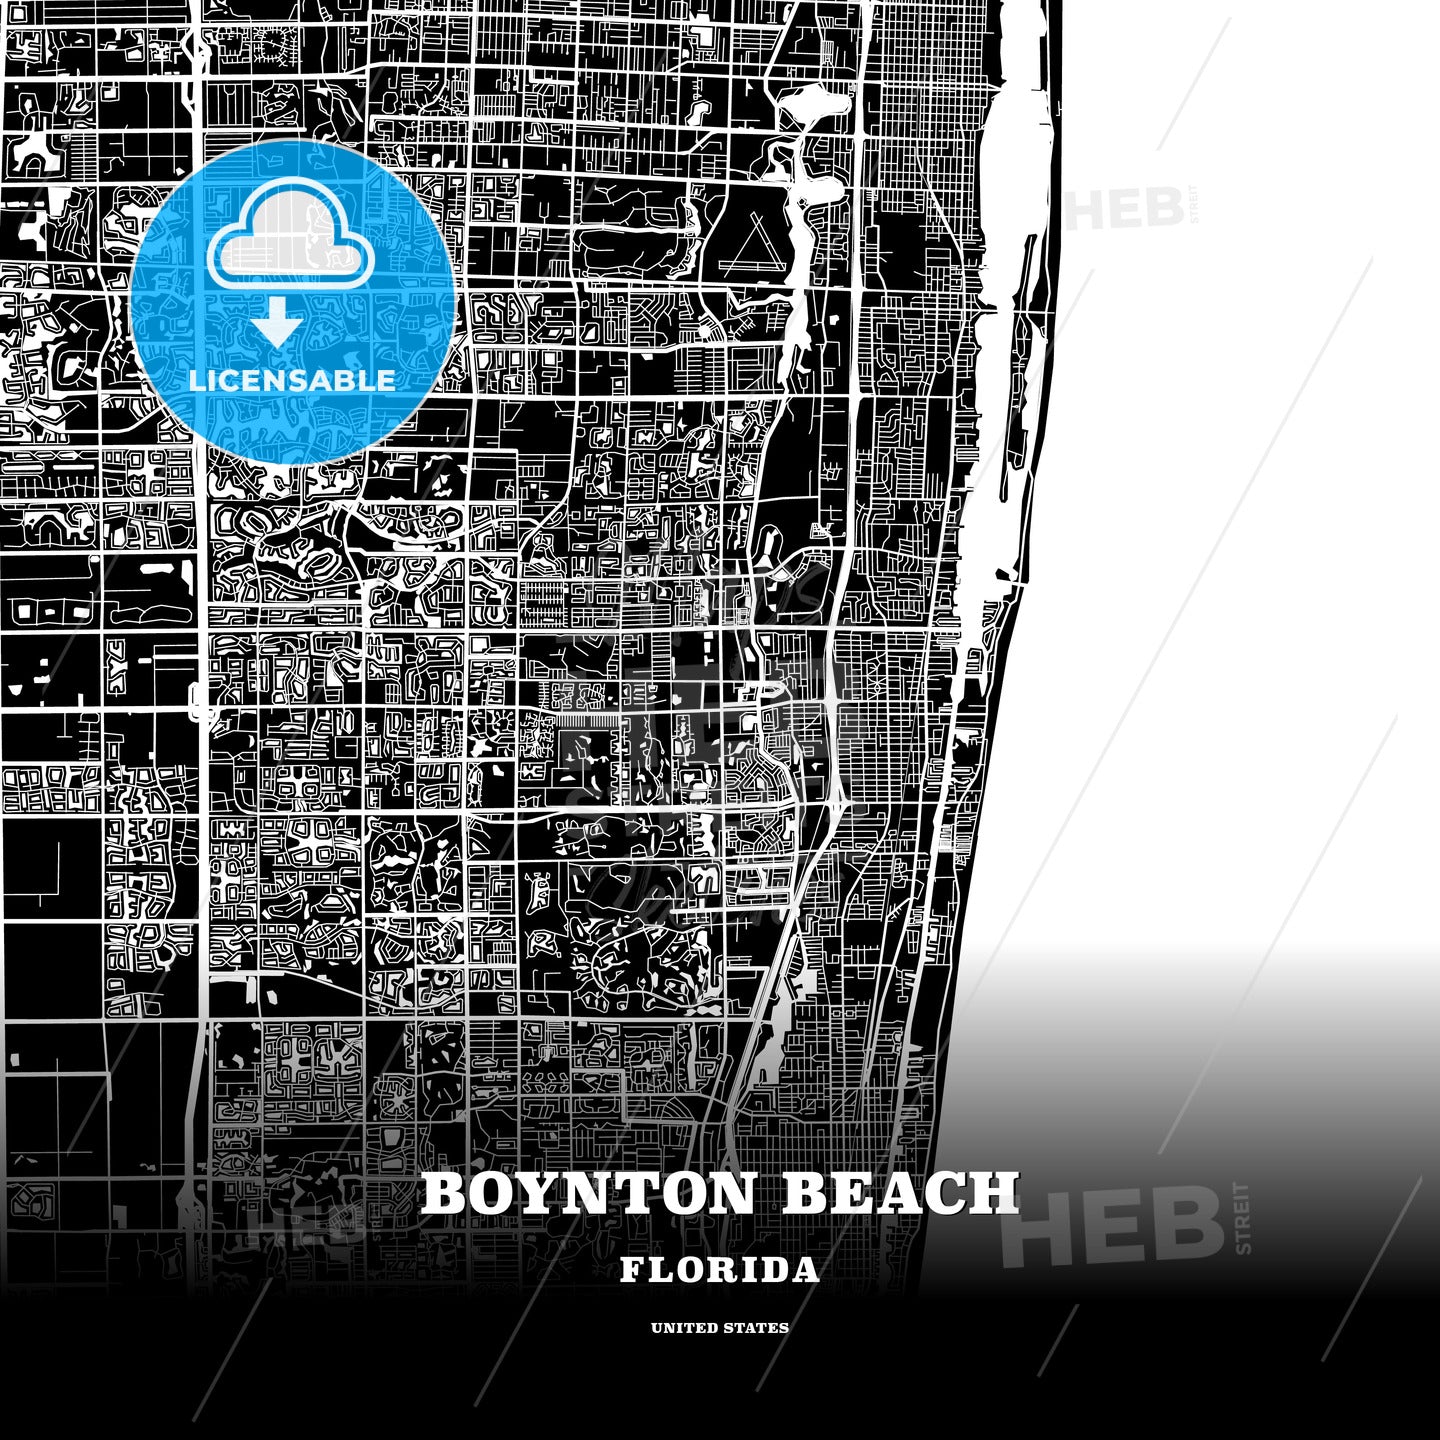 Boynton Beach, Florida, USA map